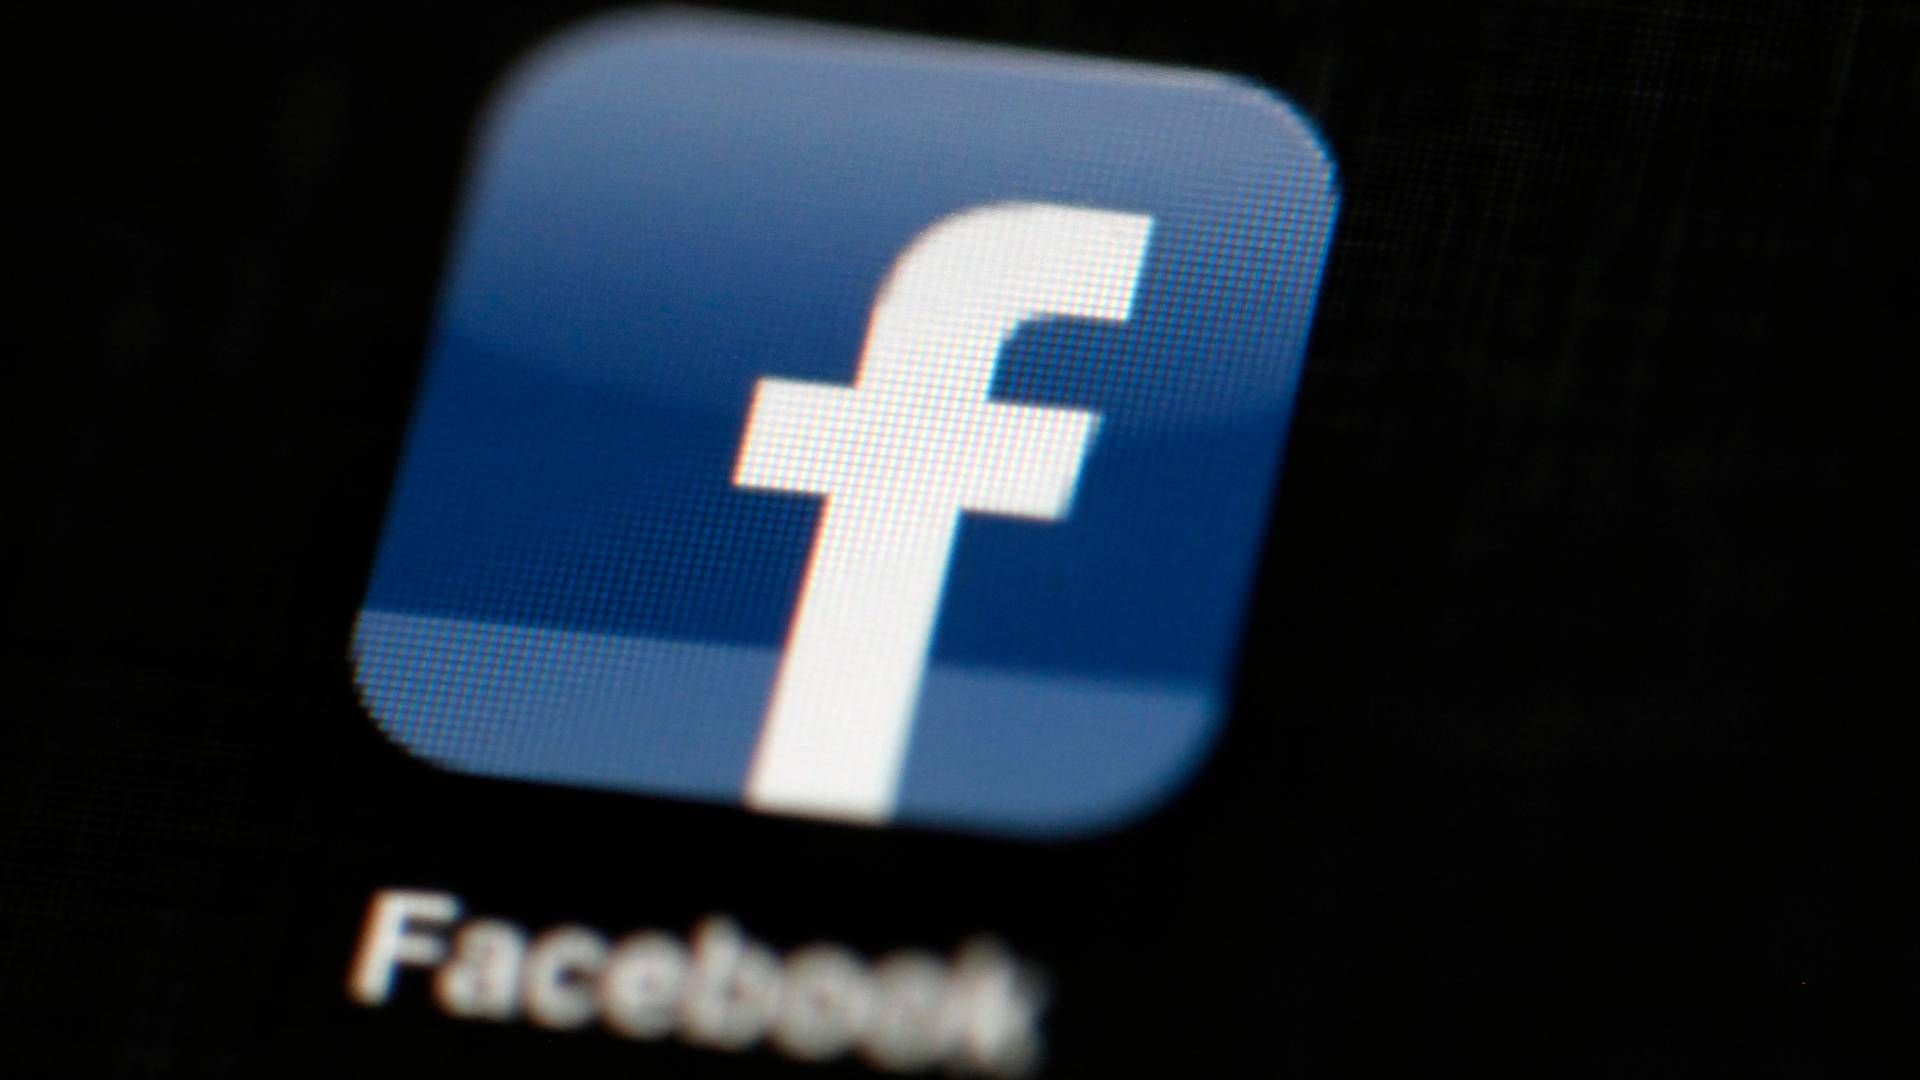 FALSKE: Kjente merkevarer misbrukes i falske Facebook-annonser. | Foto: NTB/AP Photo/Matt Rourke